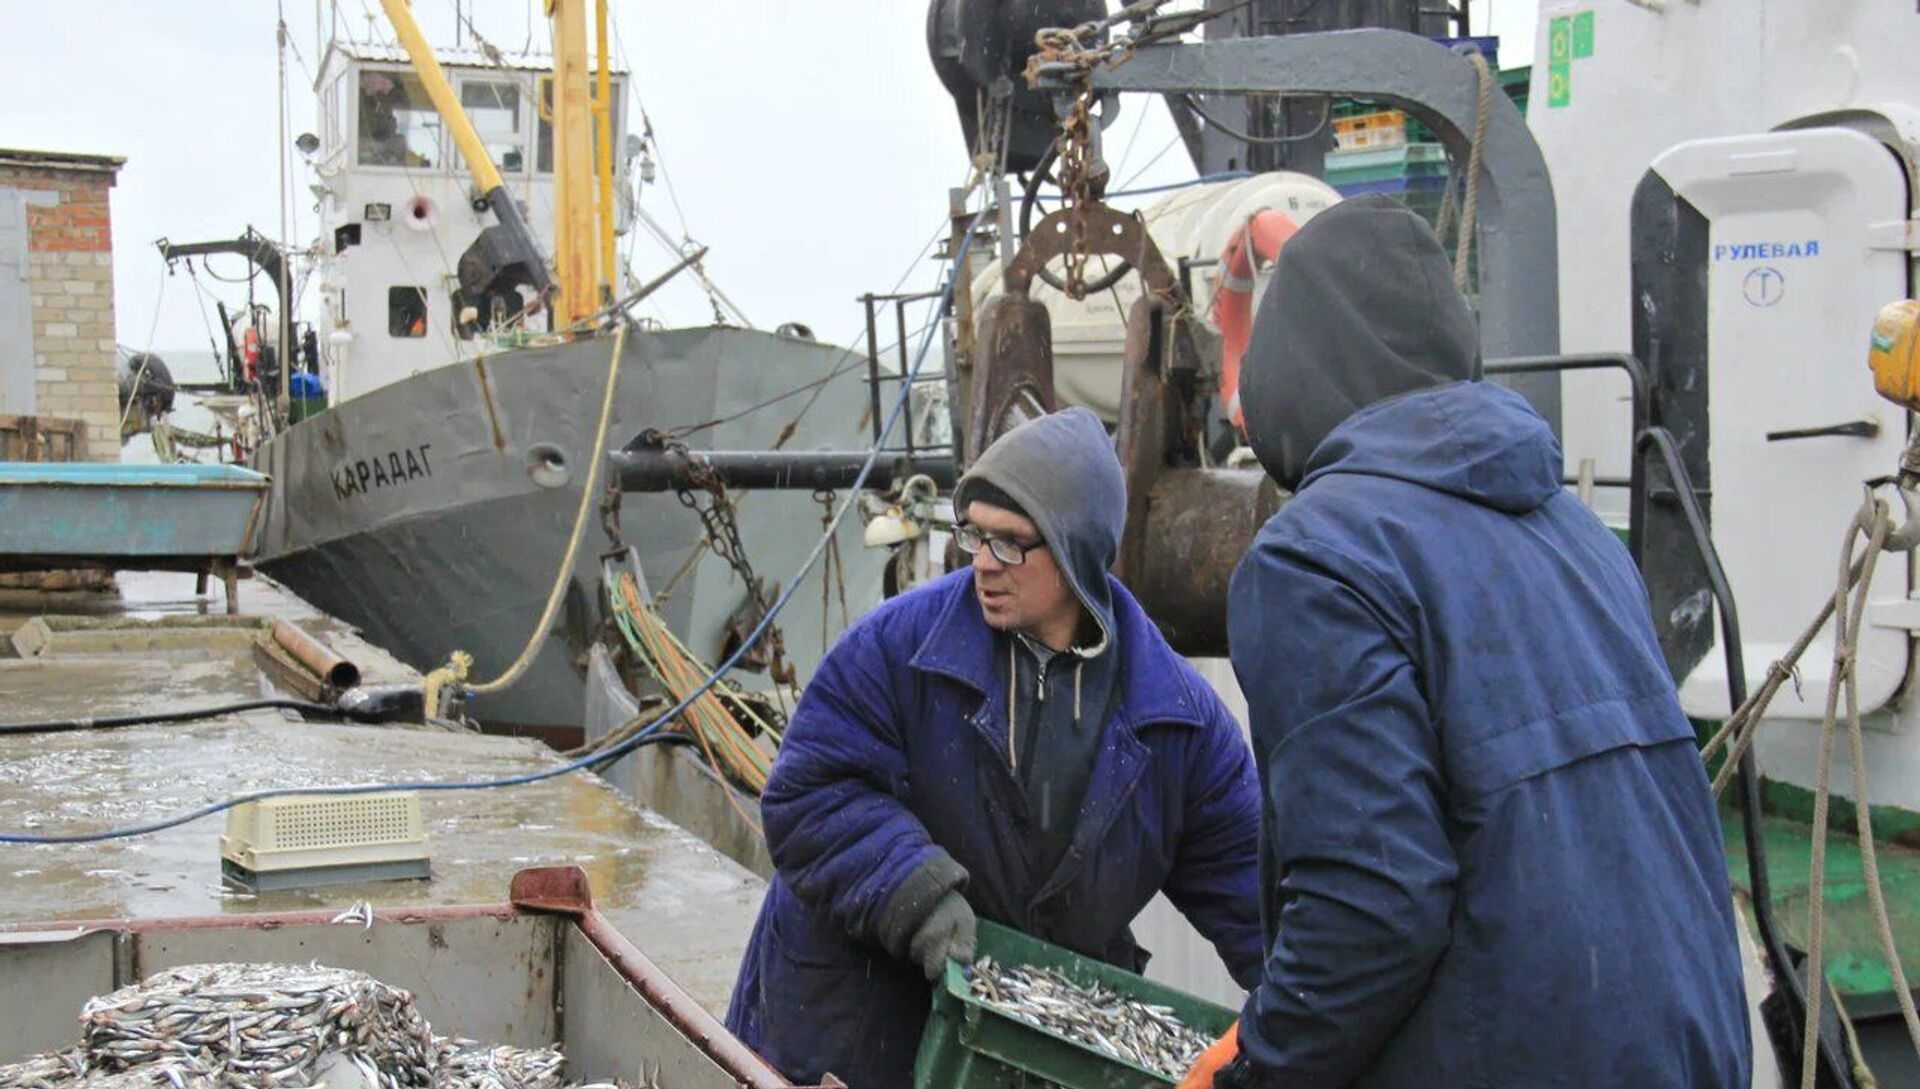 Рыбаки выгружают ящики с хамсой, которая пойдет на крымские рынки - РИА Новости, 1920, 25.12.2020